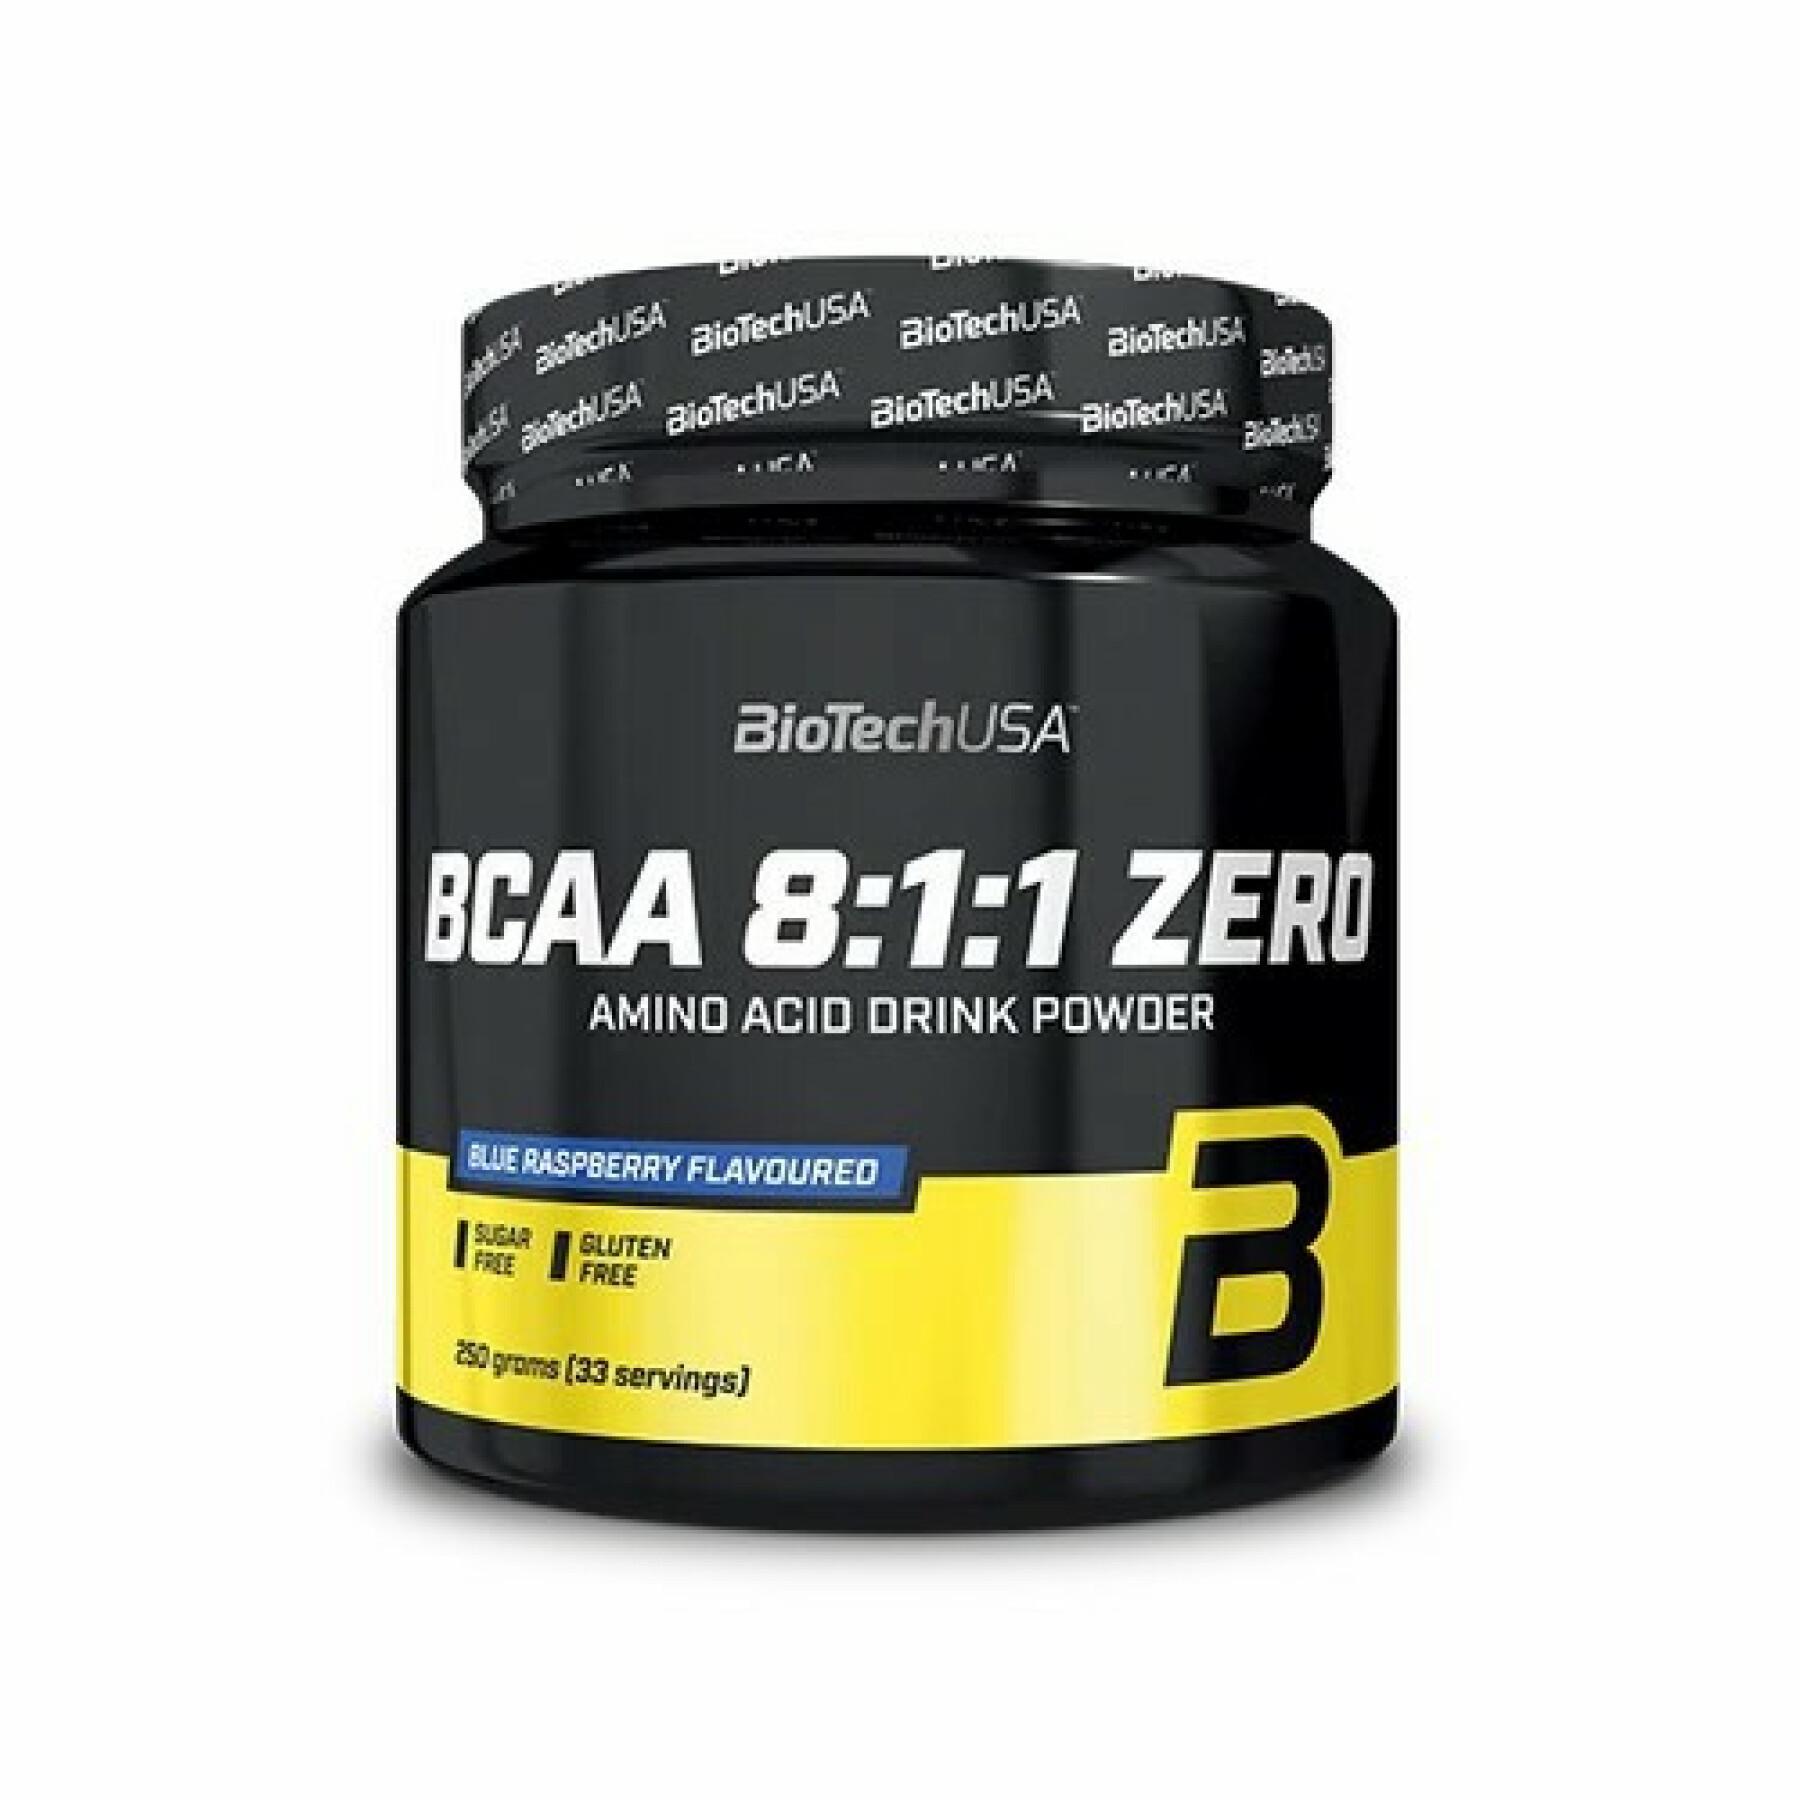 Pack de 10 botes de aminoácidos Biotech USA bcaa 8:1:1 zero - Framboise bleue - 250g